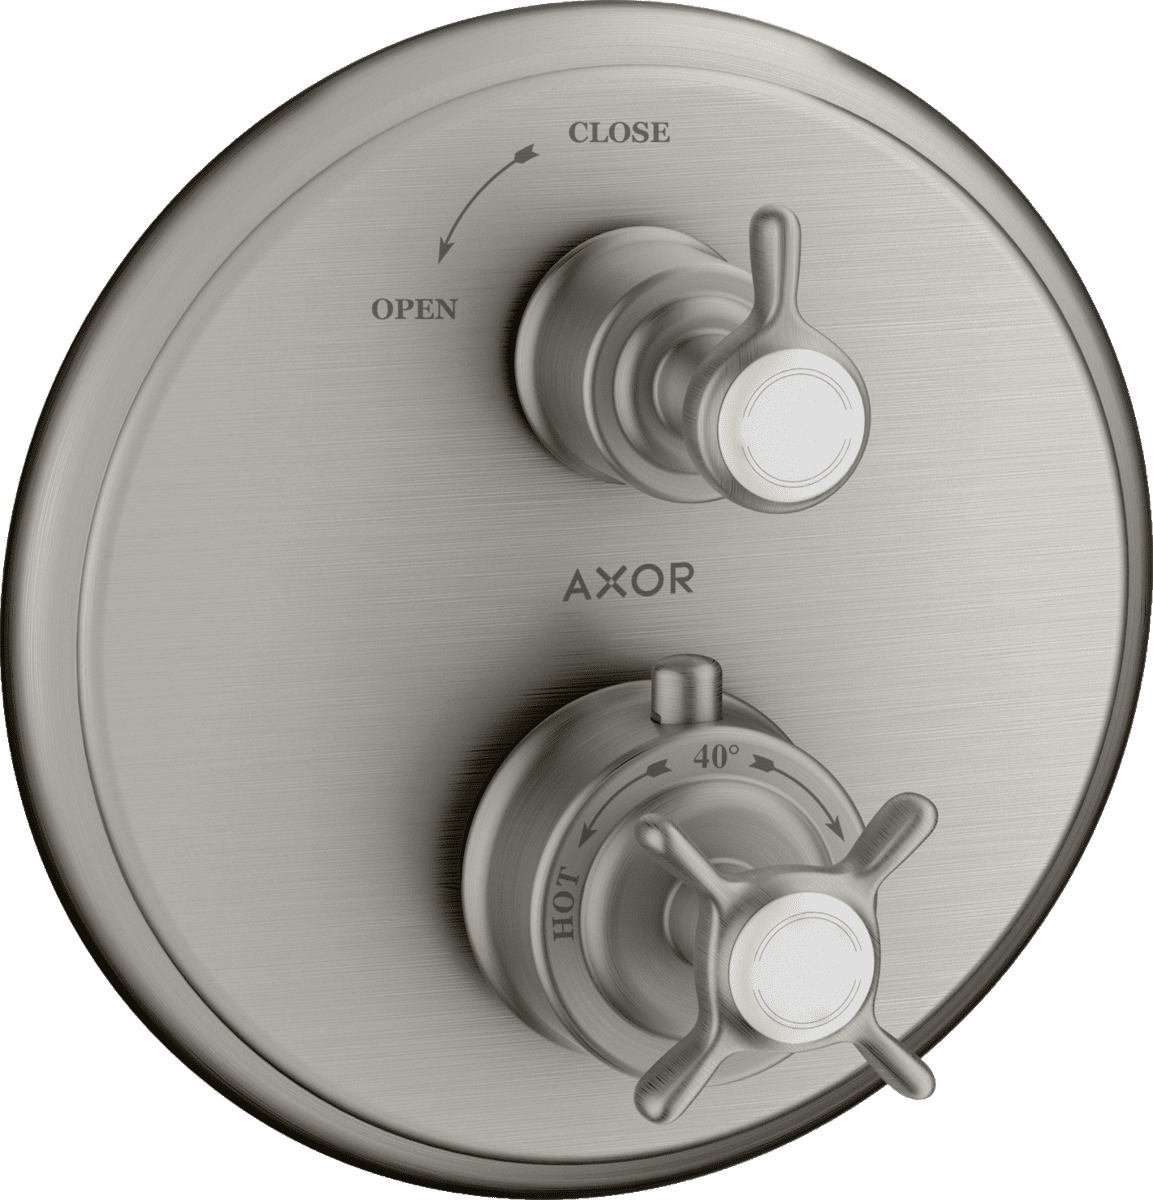 Bild von HANSGROHE AXOR Montreux Thermostat Unterputz mit Kreuzgriff und Absperrventil #16800800 - Edelstahl Optic